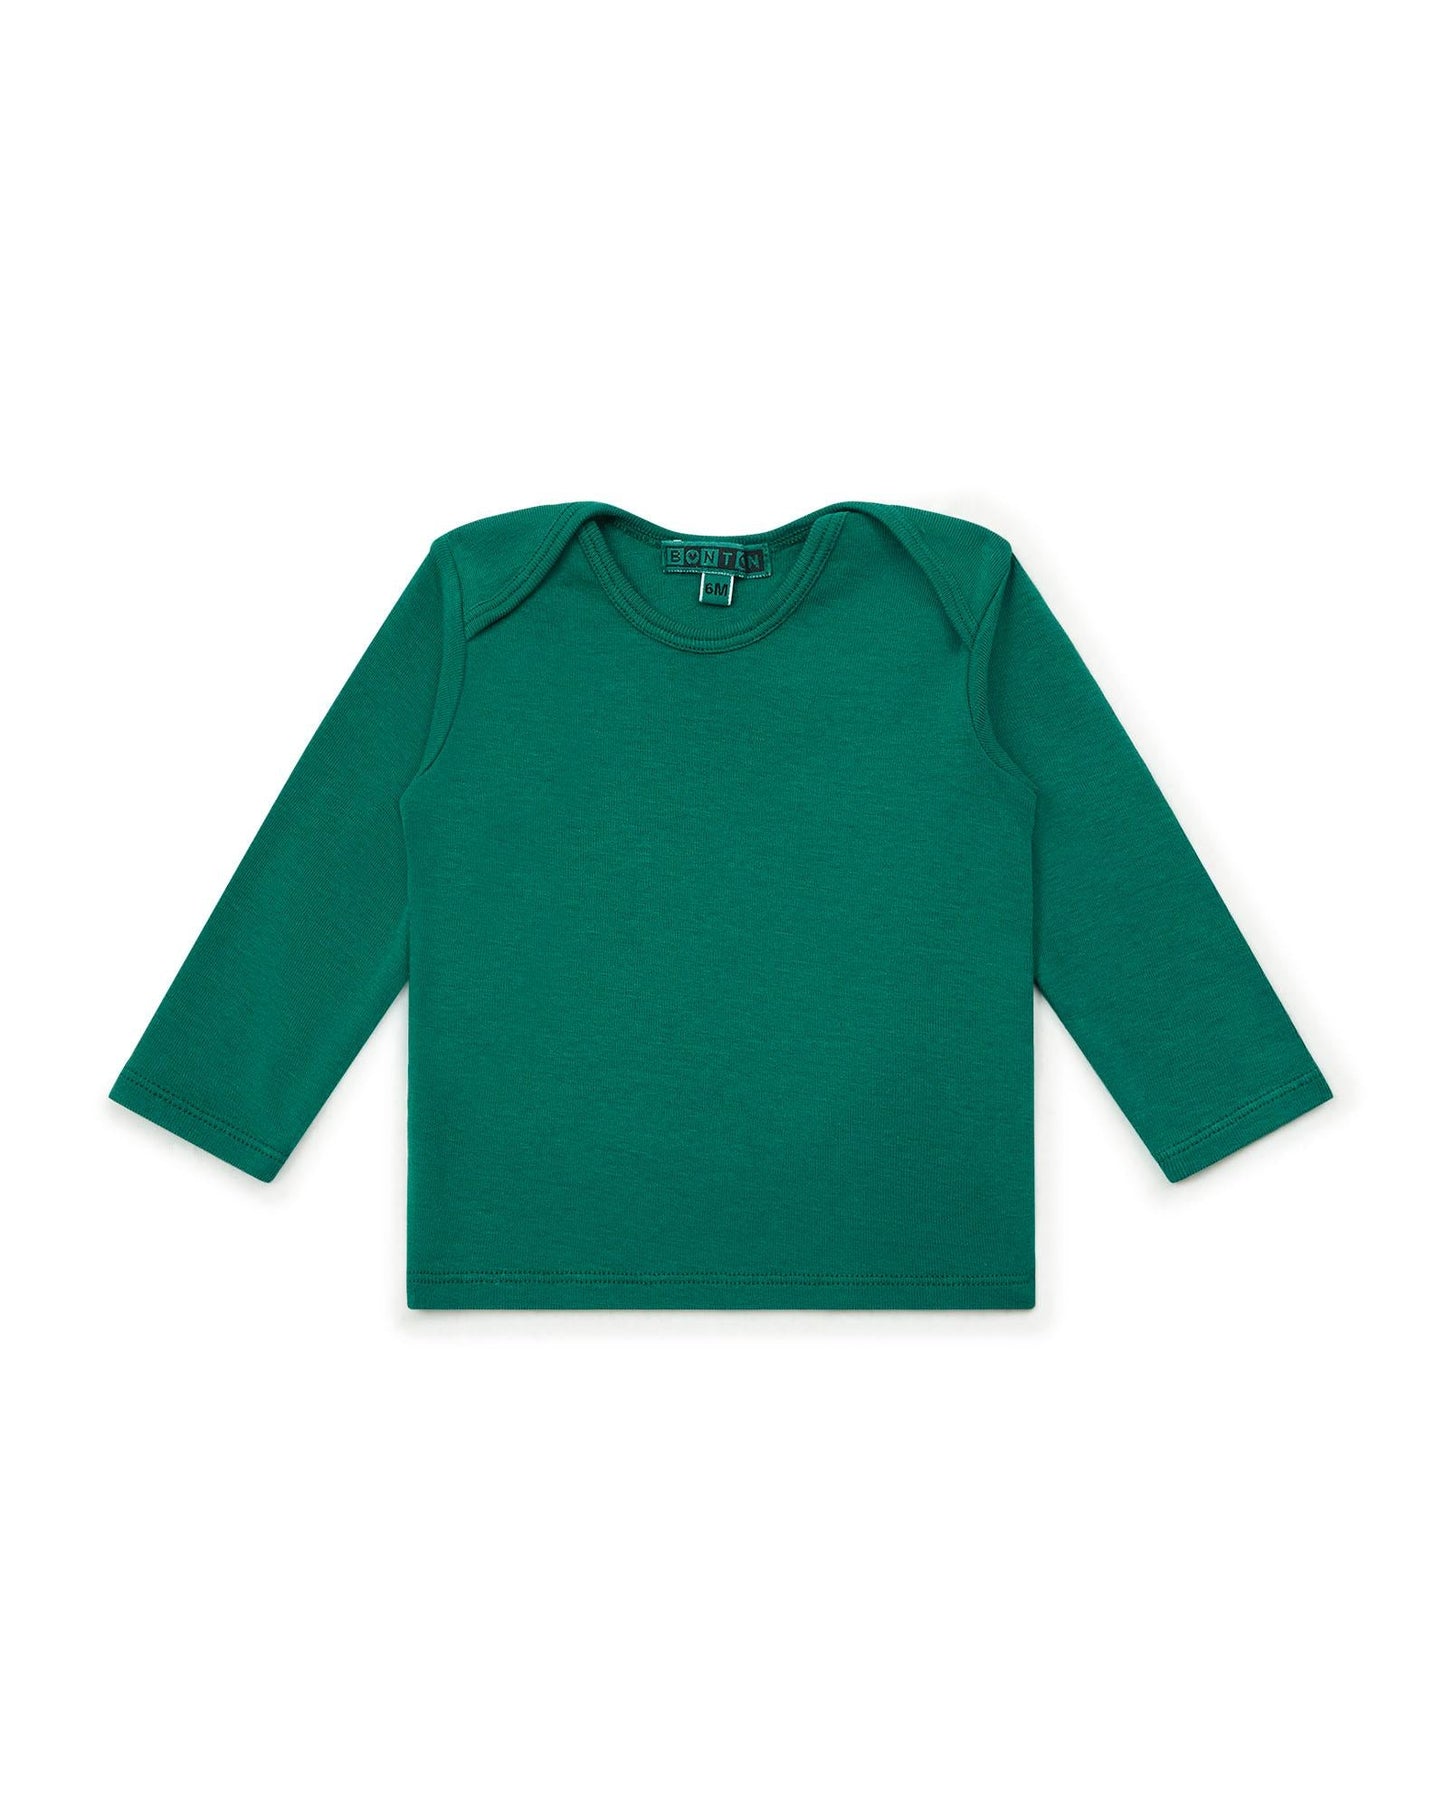 Tee-shirt - Tina vert Bébé ML 100% coton biologique